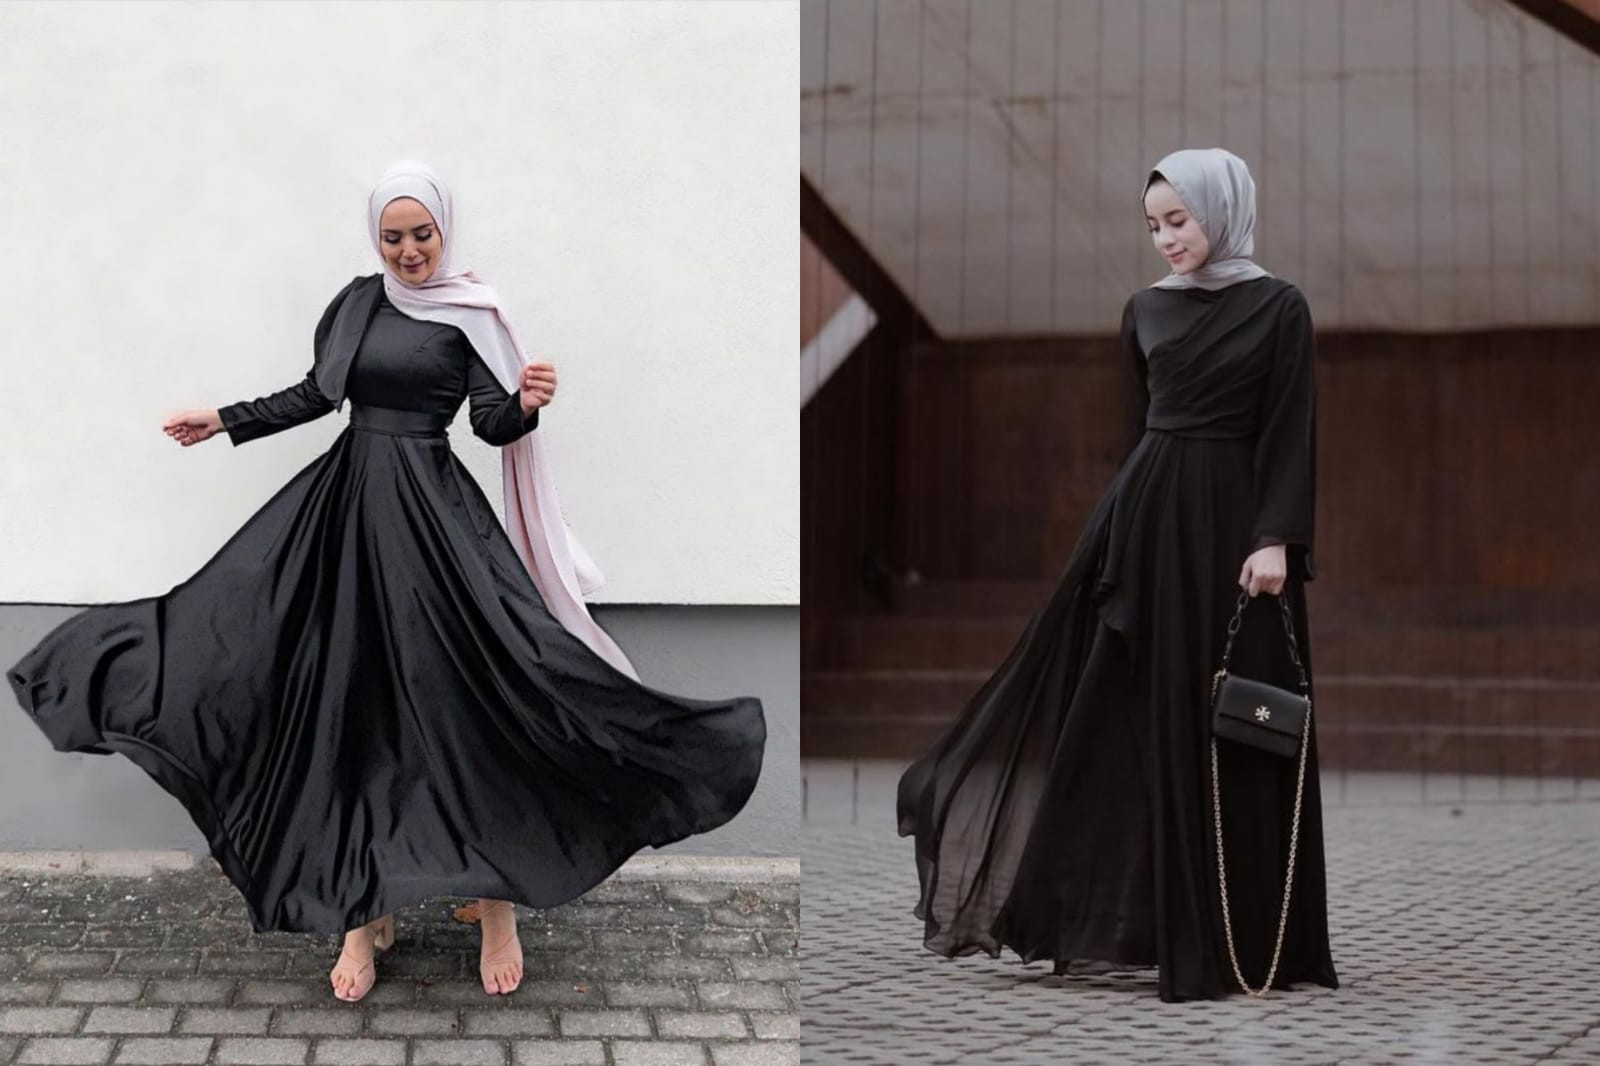 Aksesori Wanita Hijab Yang Bikin Tampilan Makin Anggun Dan Elegan